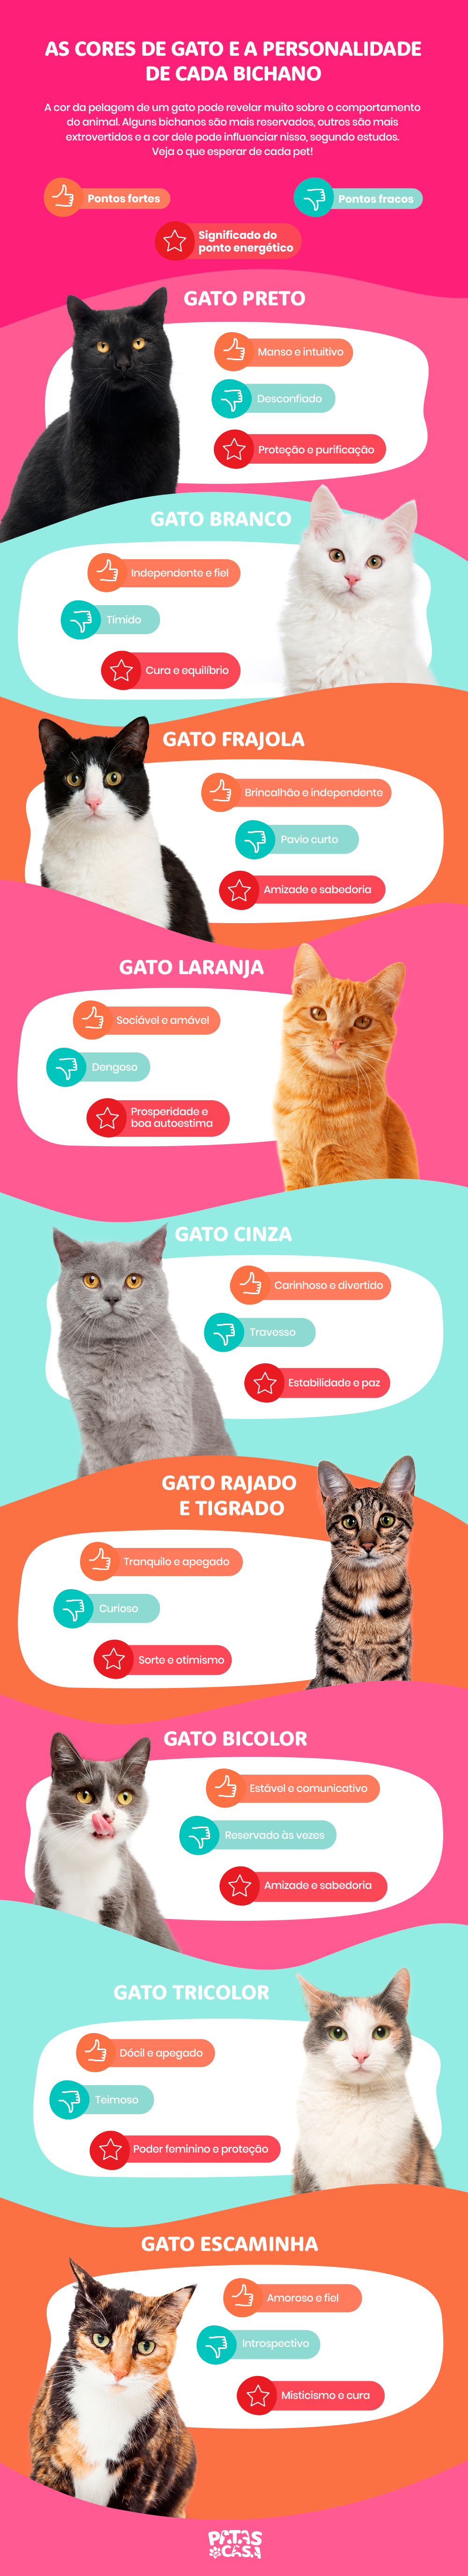 infográfico sobre personalidade e cores de gato